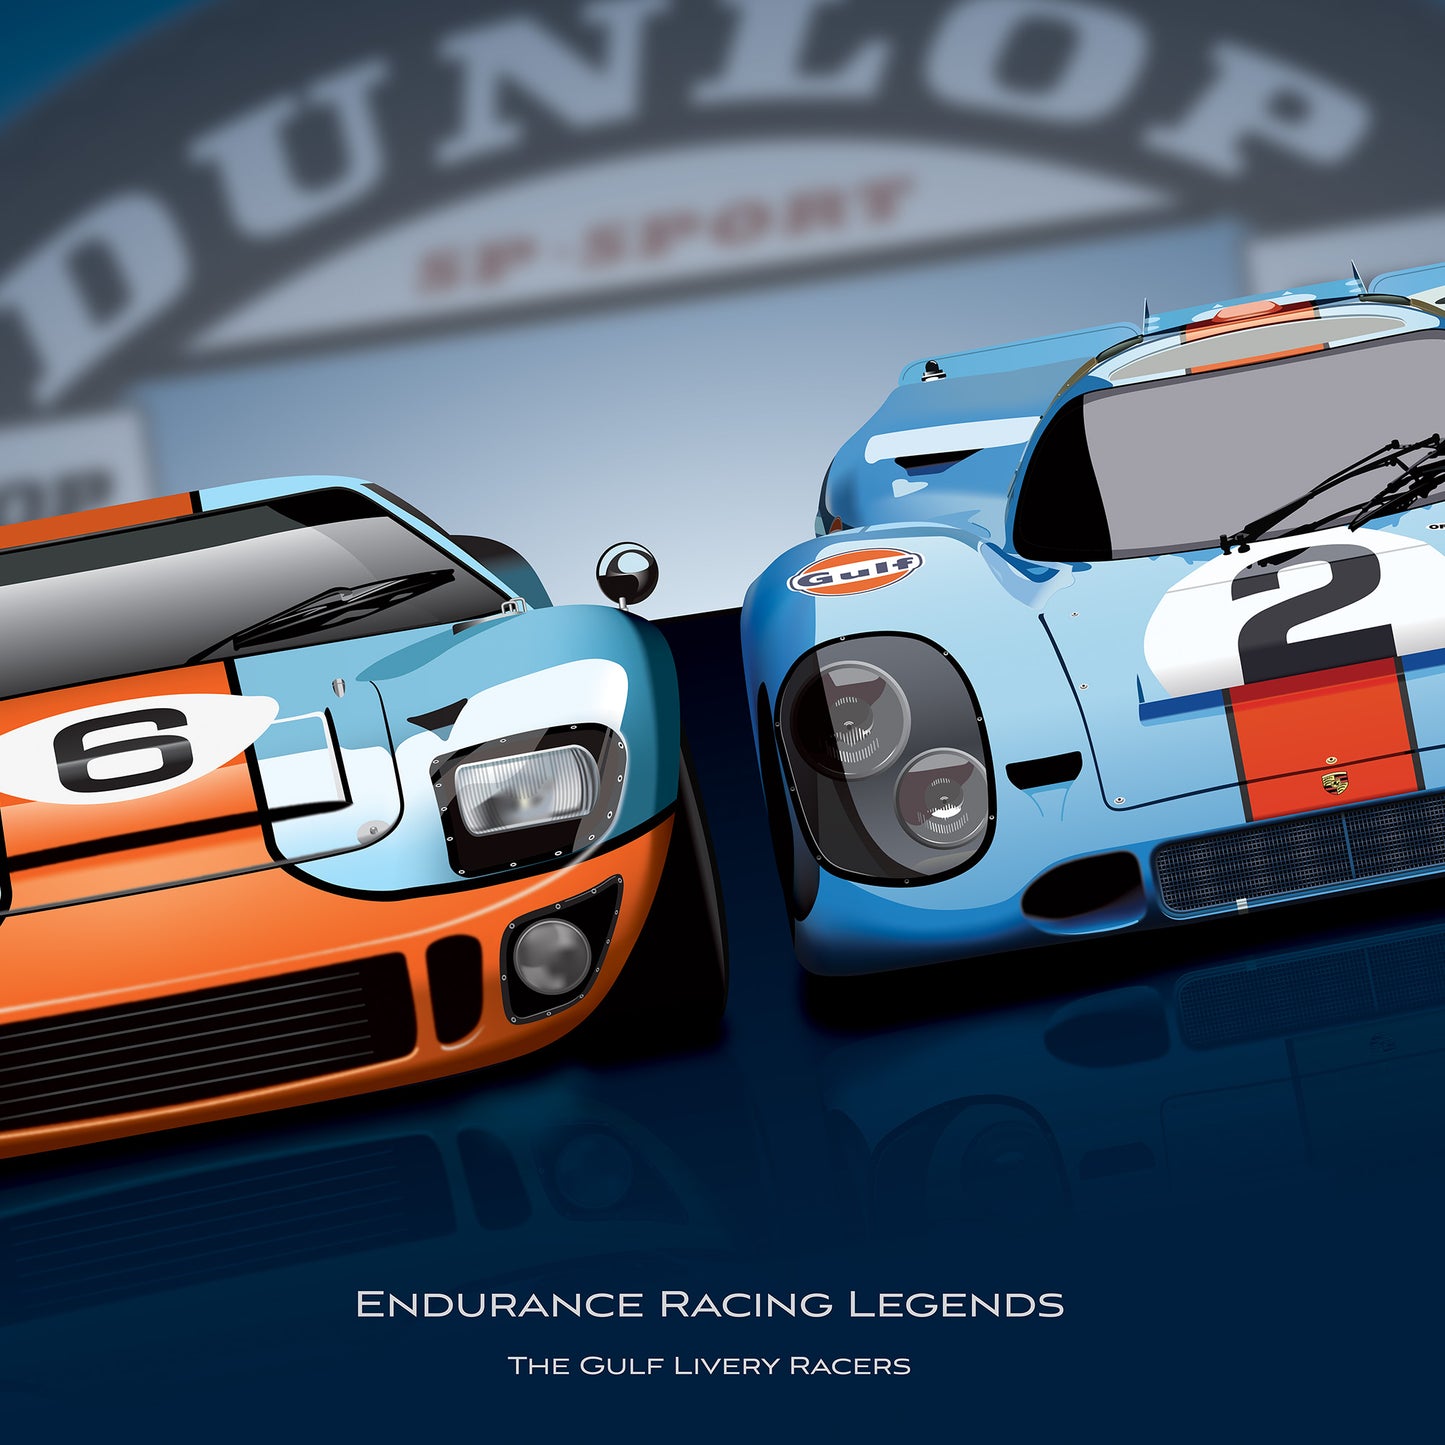 Endurance Racing Porsche 917 and Ford GT40 Poster Print - Biller's Art